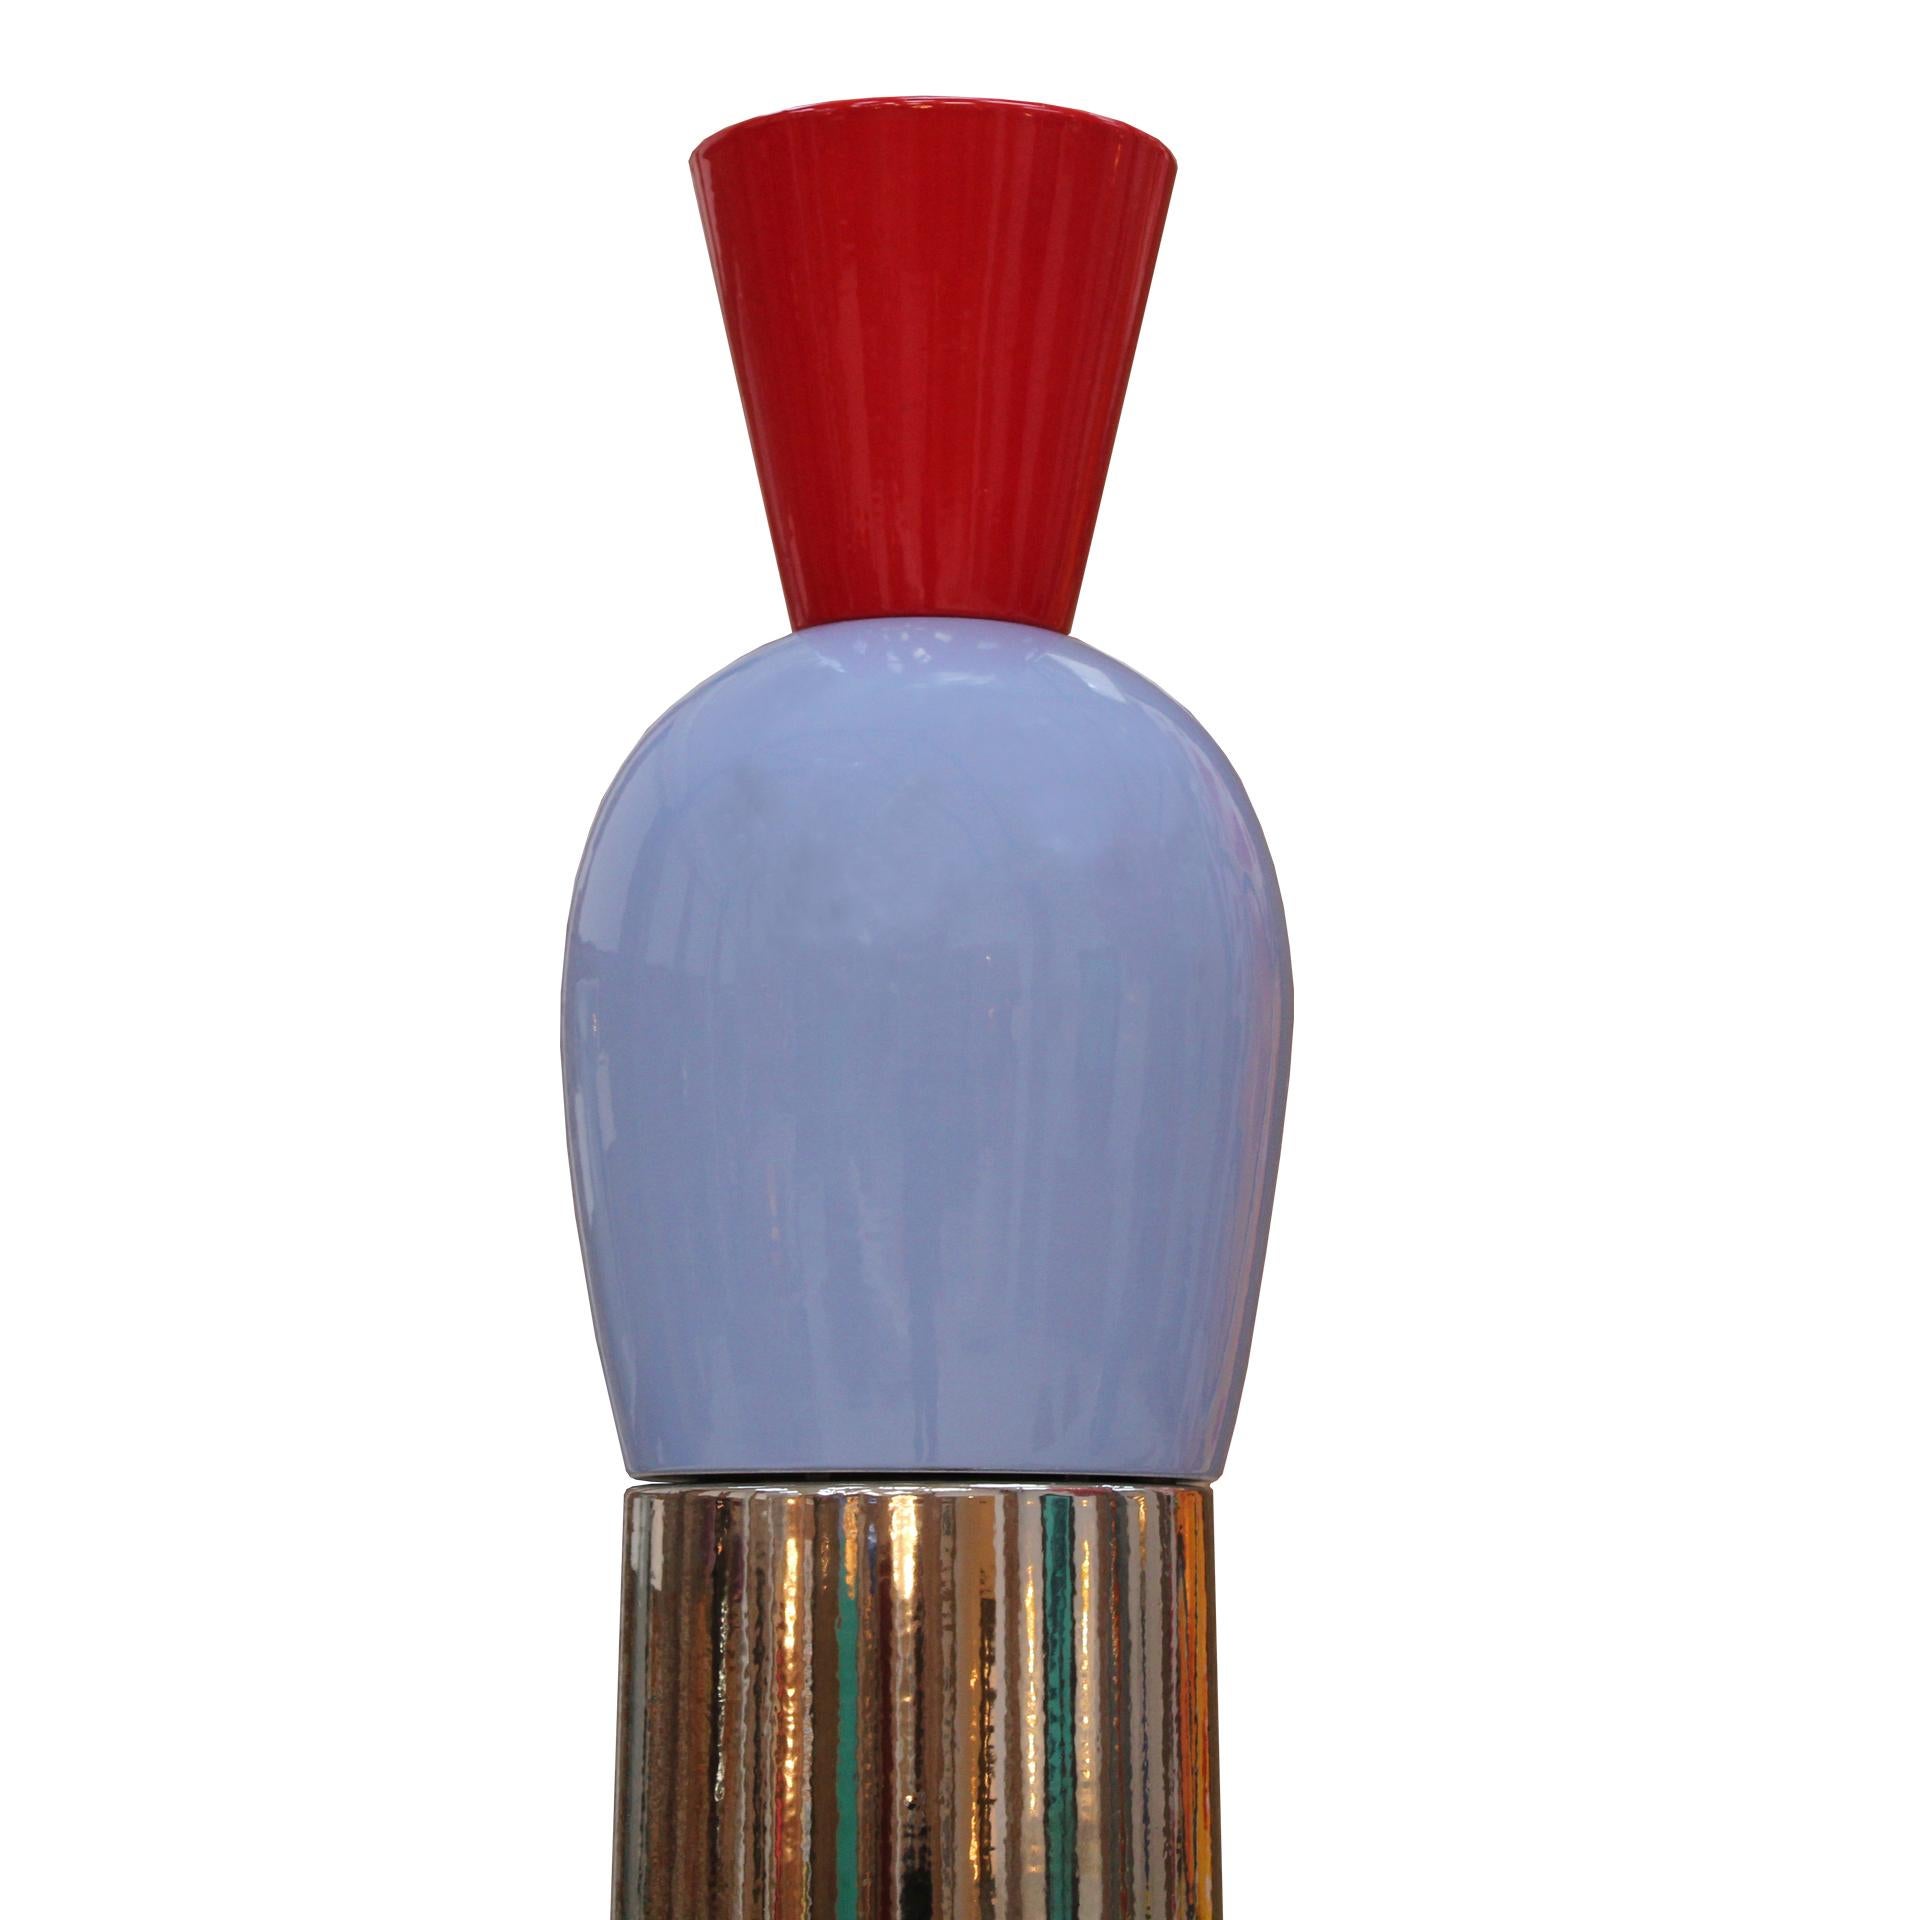 Alessandro Mendini Contemporary Modern Colored Ceramic Italian TOTEM In Good Condition For Sale In Ibiza, Spain